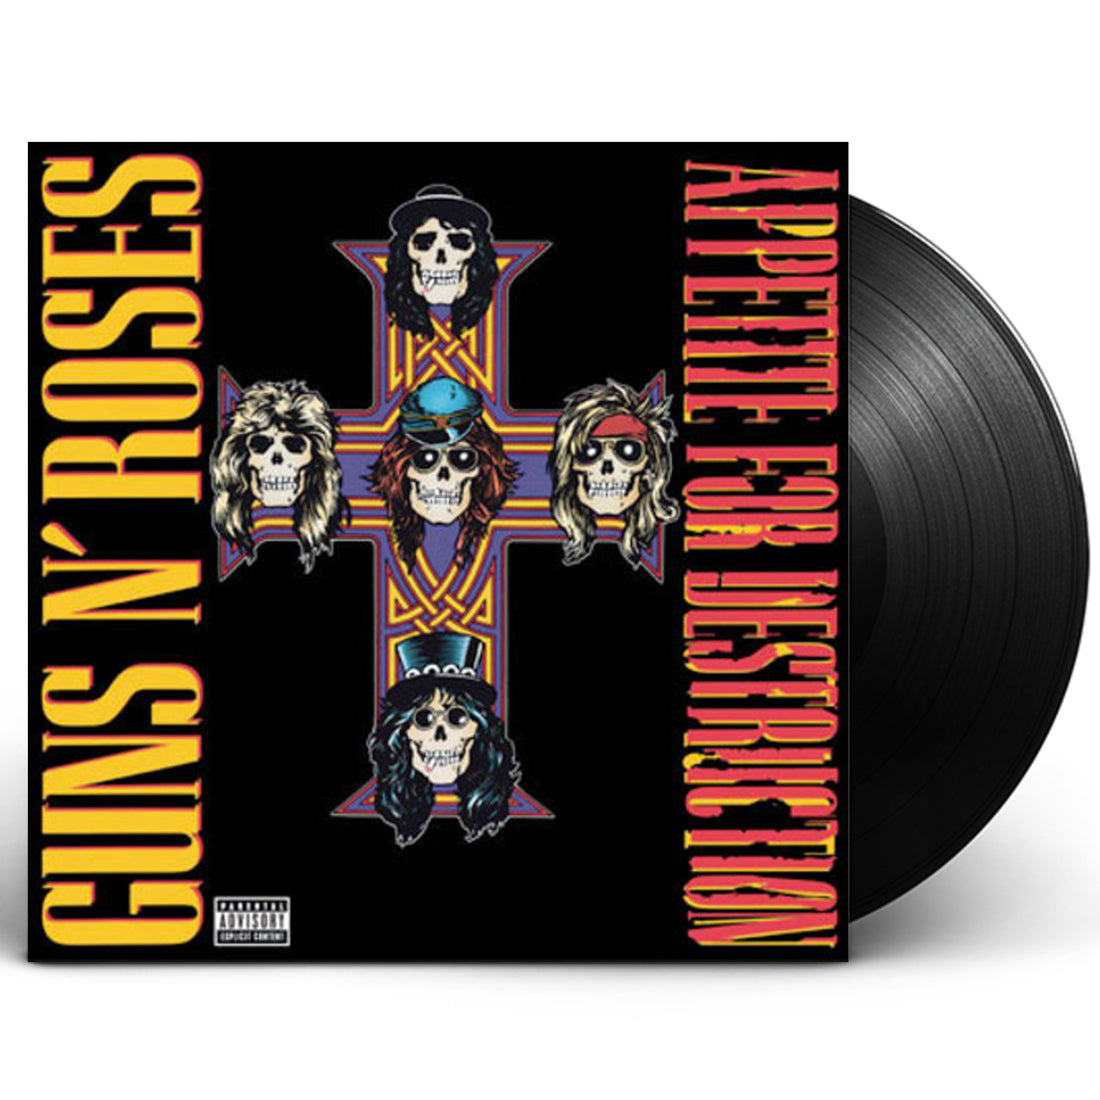 Guns N' Roses "Appetite for Destruction" LP Vinyl